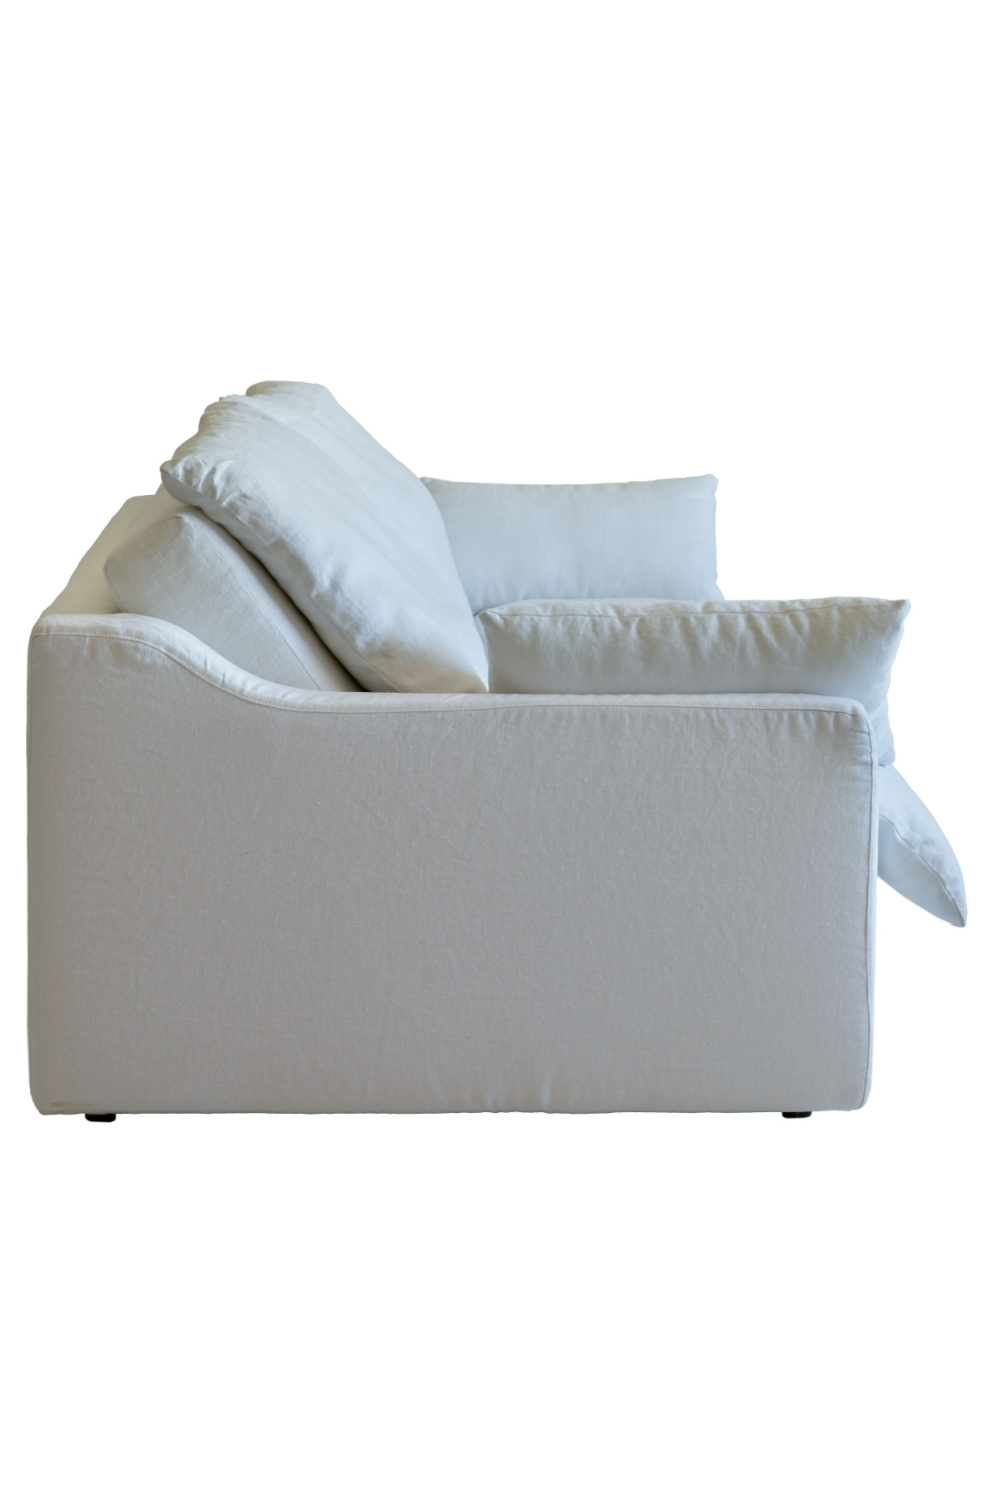 White Linen Upholstered Sofa | Andrew Martin Serenity | Oroa.com